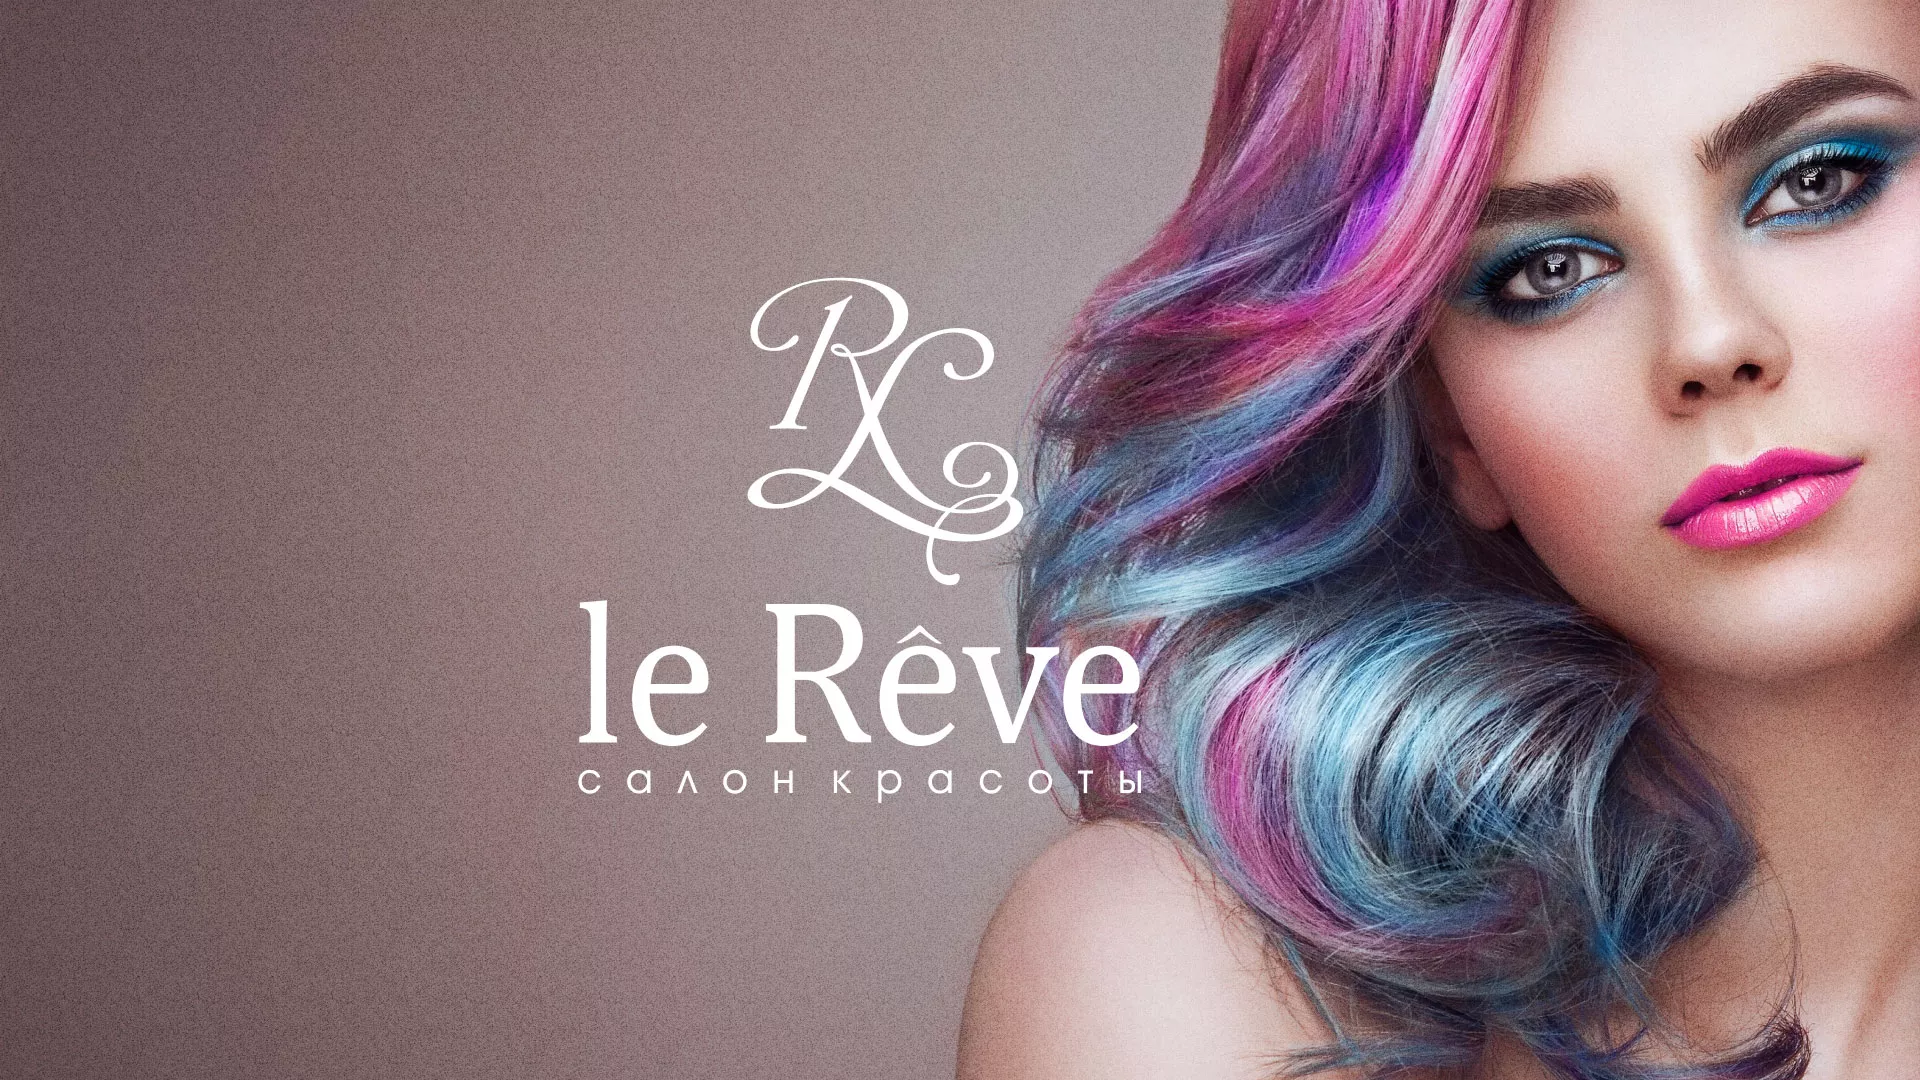 Создание сайта для салона красоты «Le Reve» в Московском